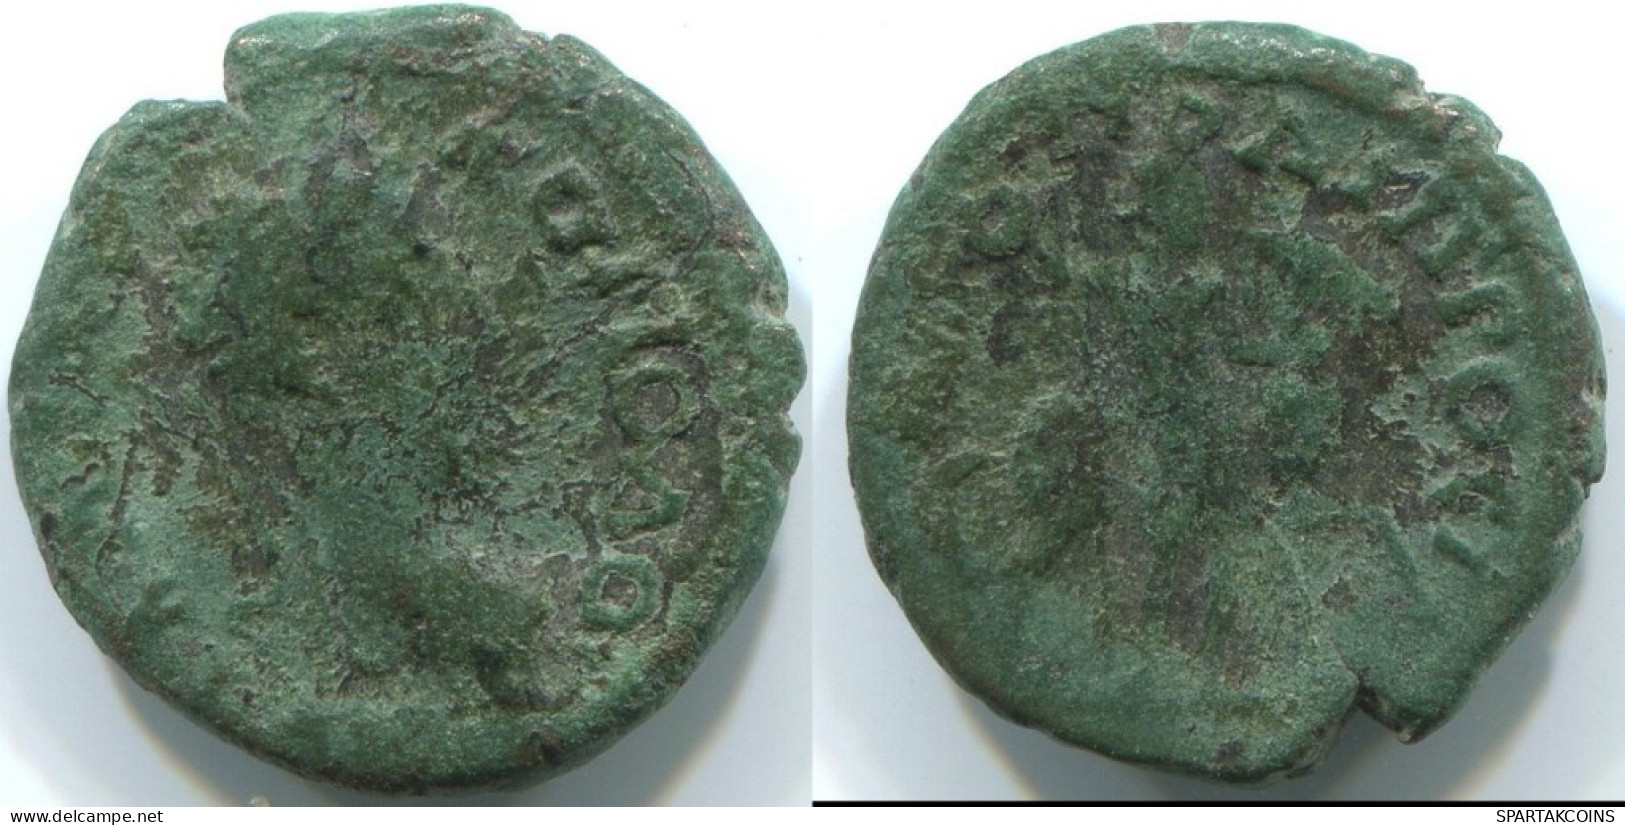 RÖMISCHE PROVINZMÜNZE Roman Provincial Ancient Coin 3g/16mm #ANT1351.31.D.A - Röm. Provinz